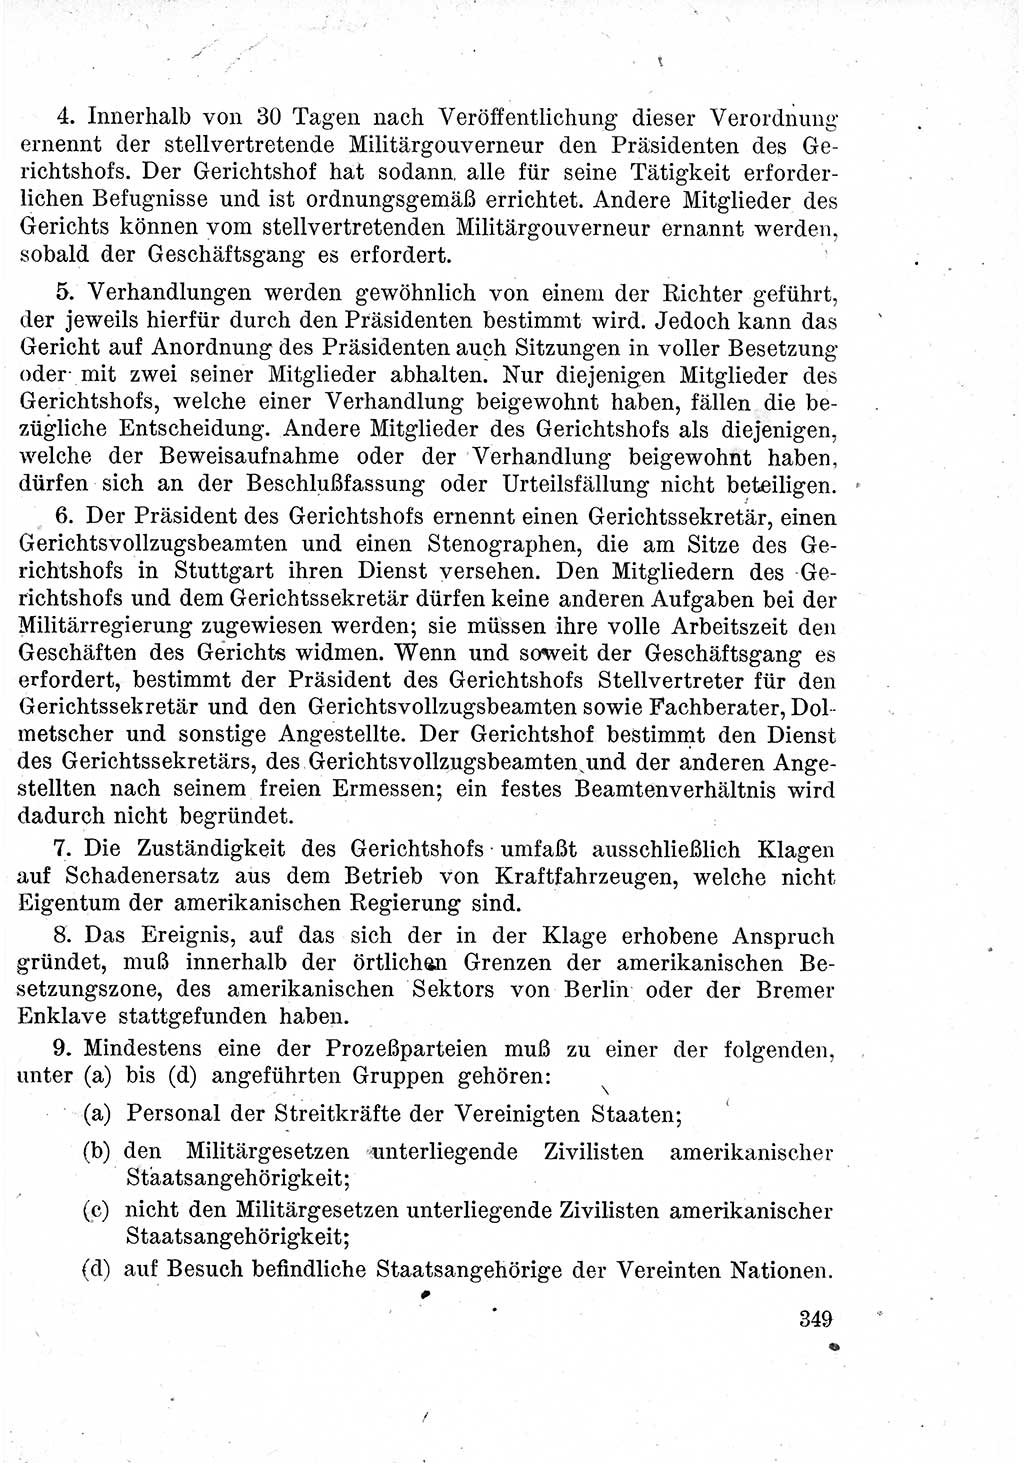 Das Recht der Besatzungsmacht (Deutschland), Proklamationen, Deklerationen, Verordnungen, Gesetze und Bekanntmachungen 1947, Seite 349 (R. Bes. Dtl. 1947, S. 349)